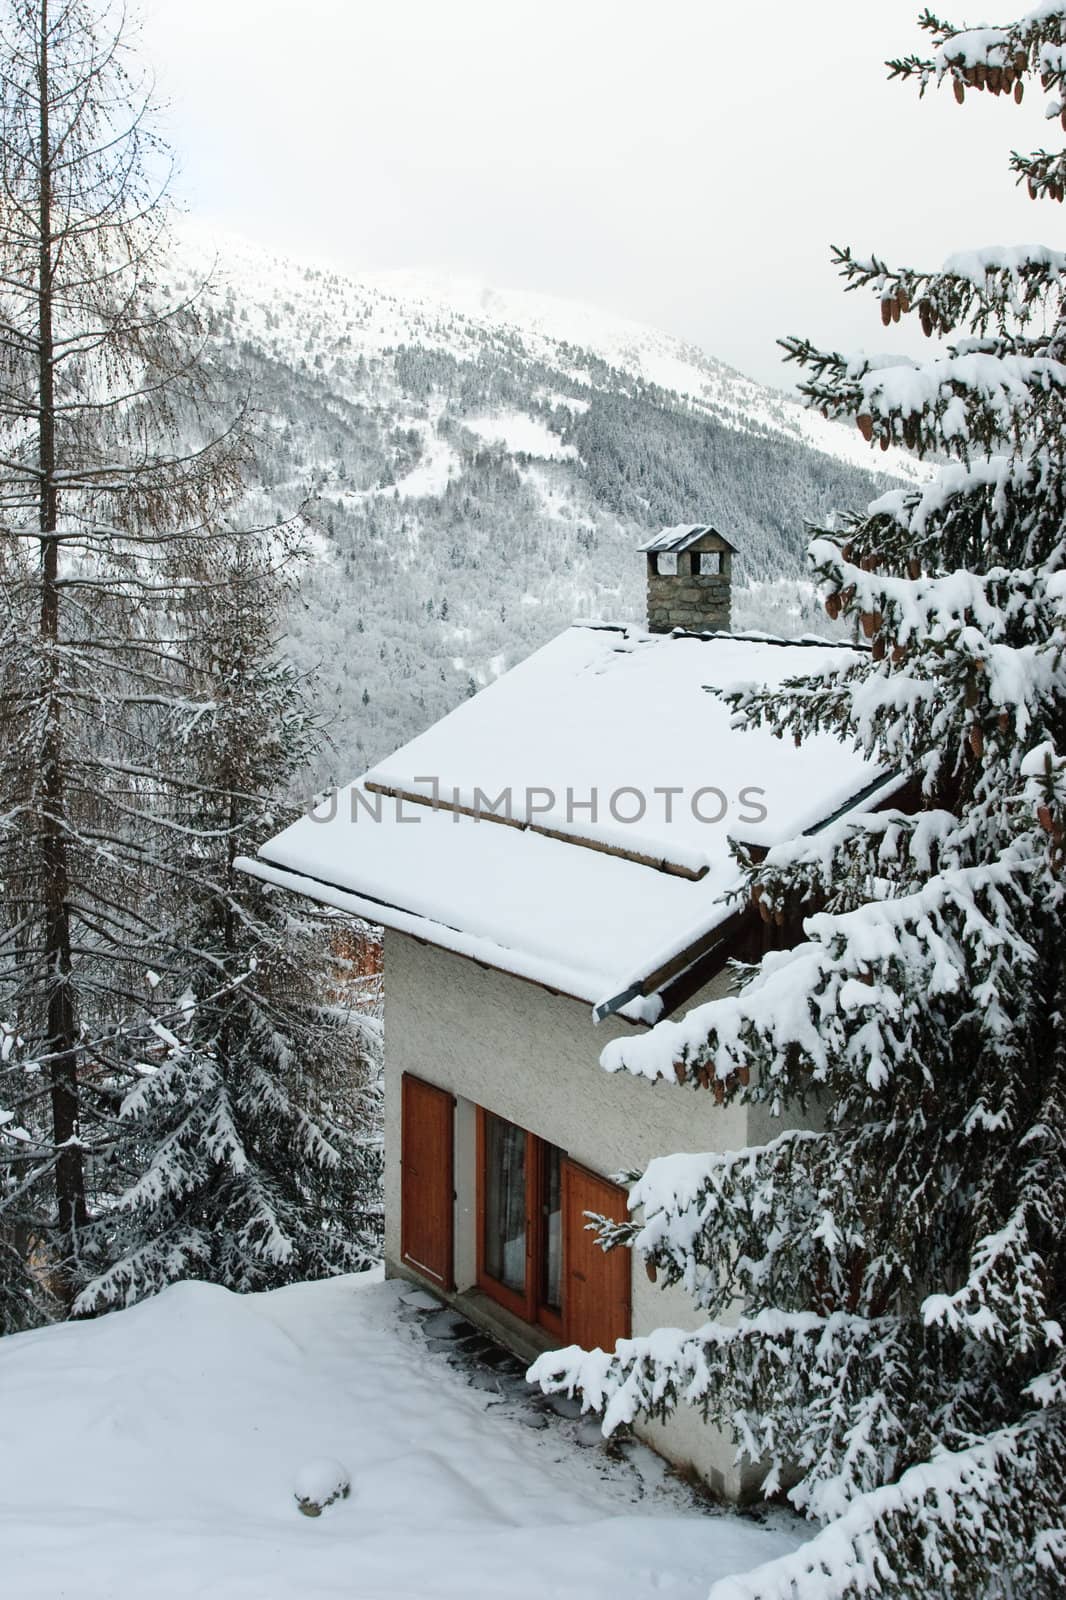 House at Meribel Ski resort, Trois Vallees, France